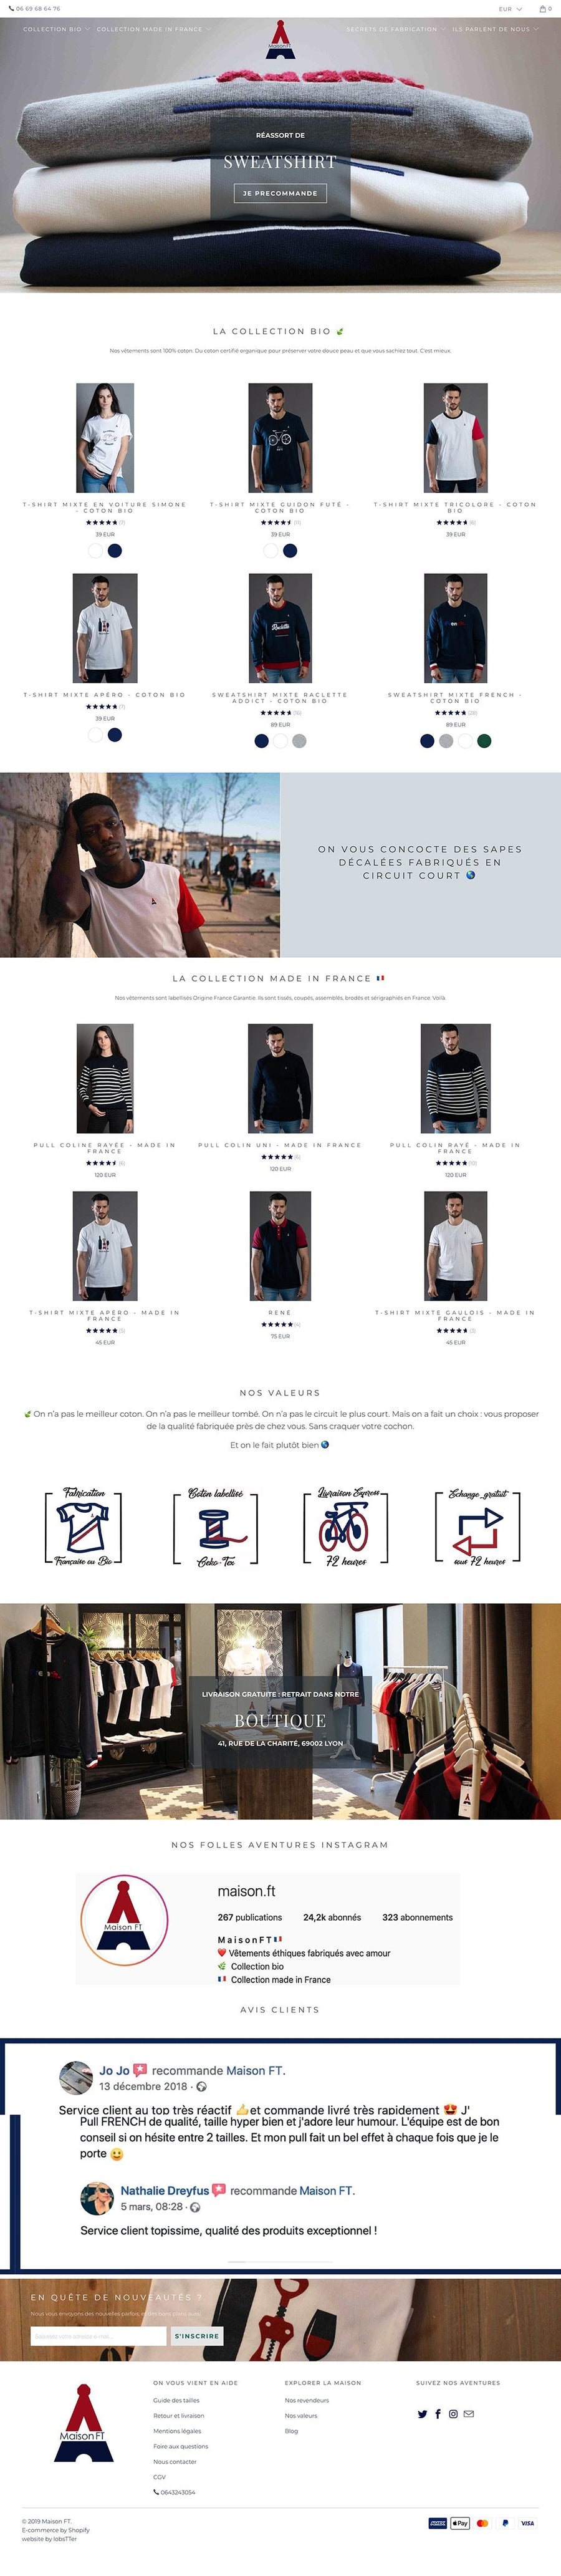 MaisonFT.com marque de T-shirt Eco responsable & Bio Exemple de site Mode site shopify Mariault Ludovic / lobsTTer Agence Shopify Plus & Expert Shopify